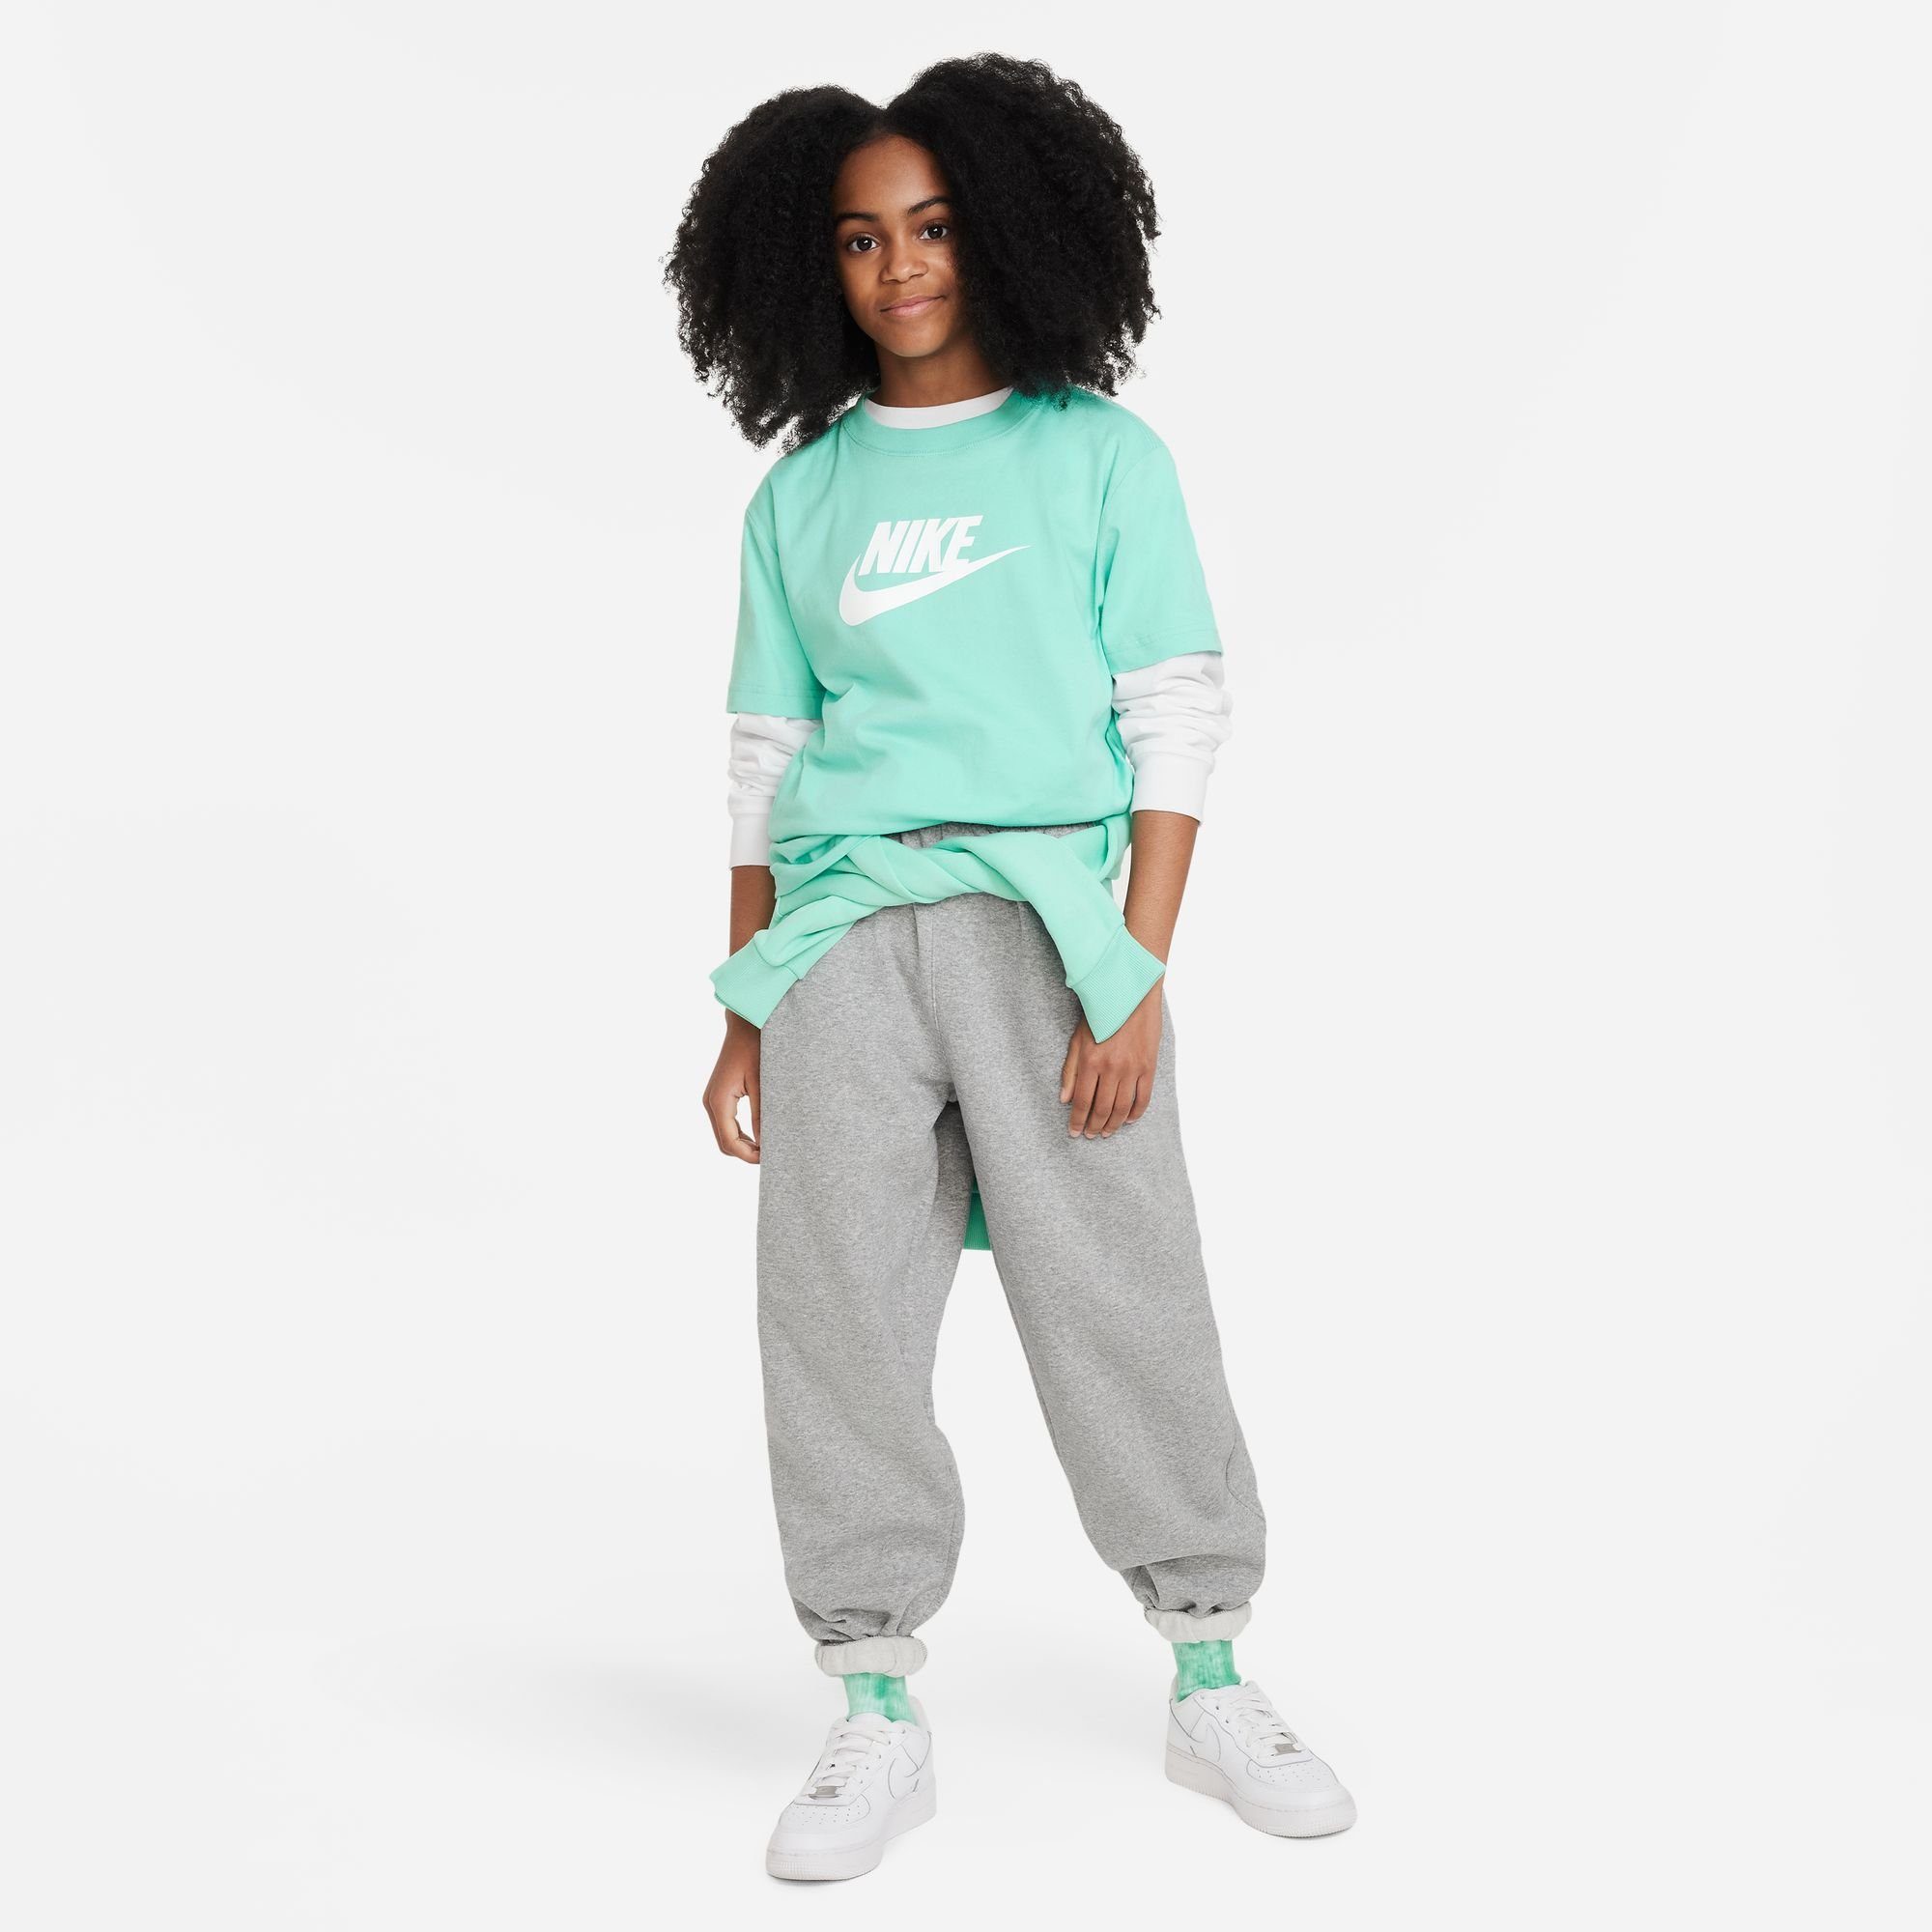 RISE EMERALD Nike T-SHIRT T-Shirt KIDS' BIG Sportswear (GIRLS)